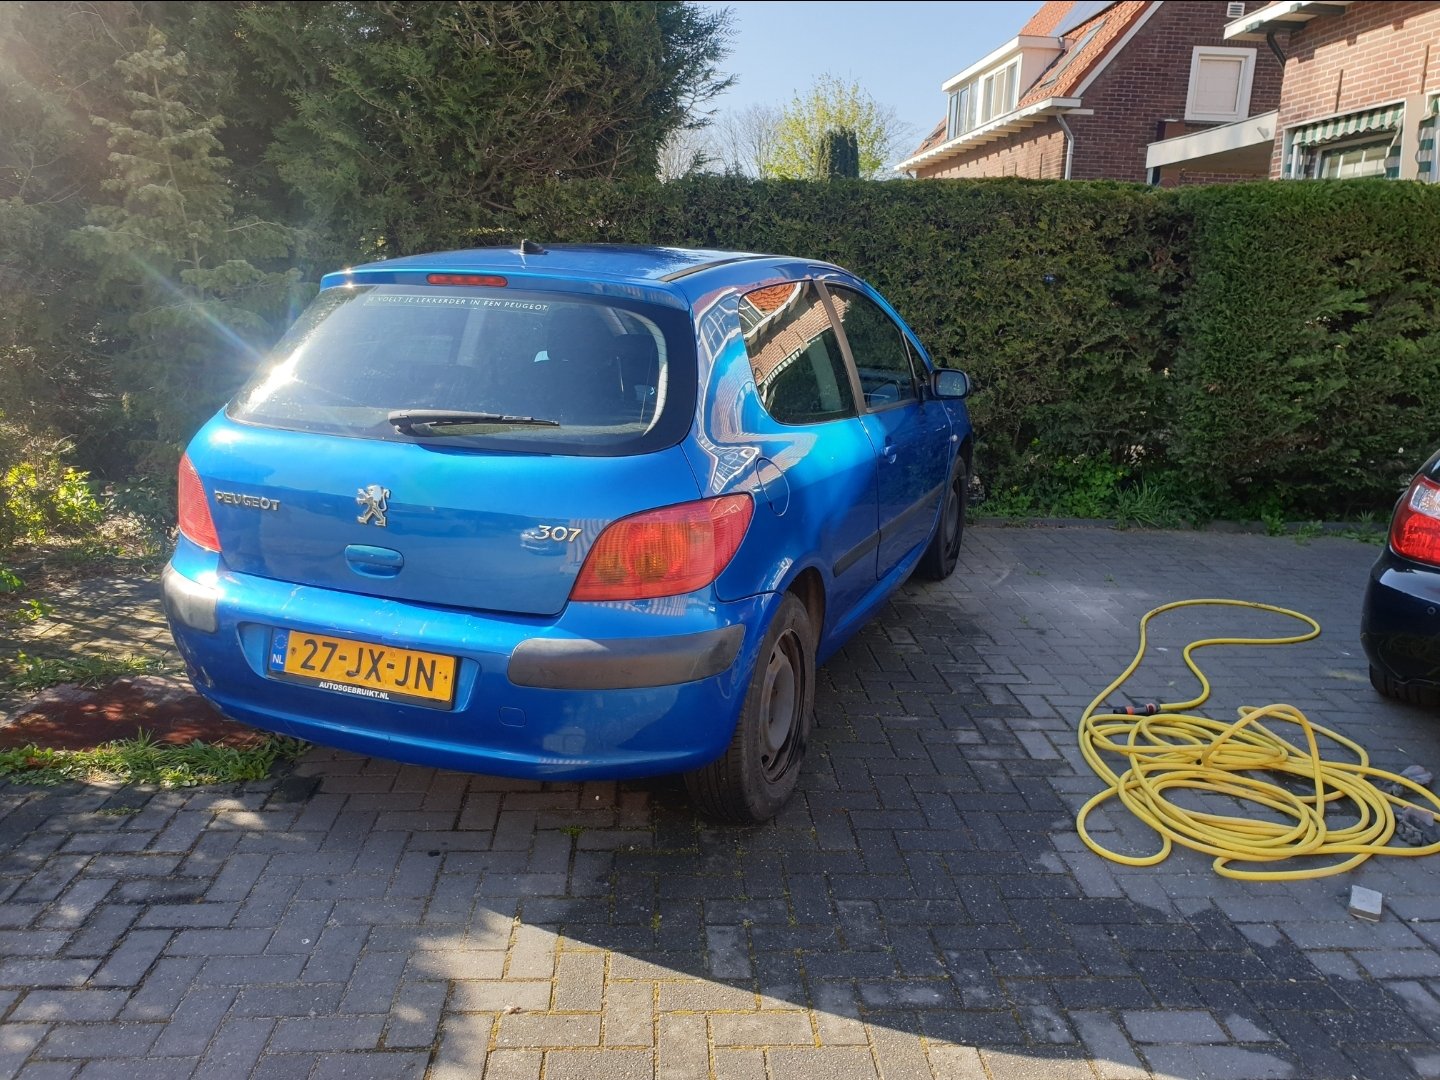 Peugeot 307 1.6 16V XS aangeboden op MarktPlaza.nl